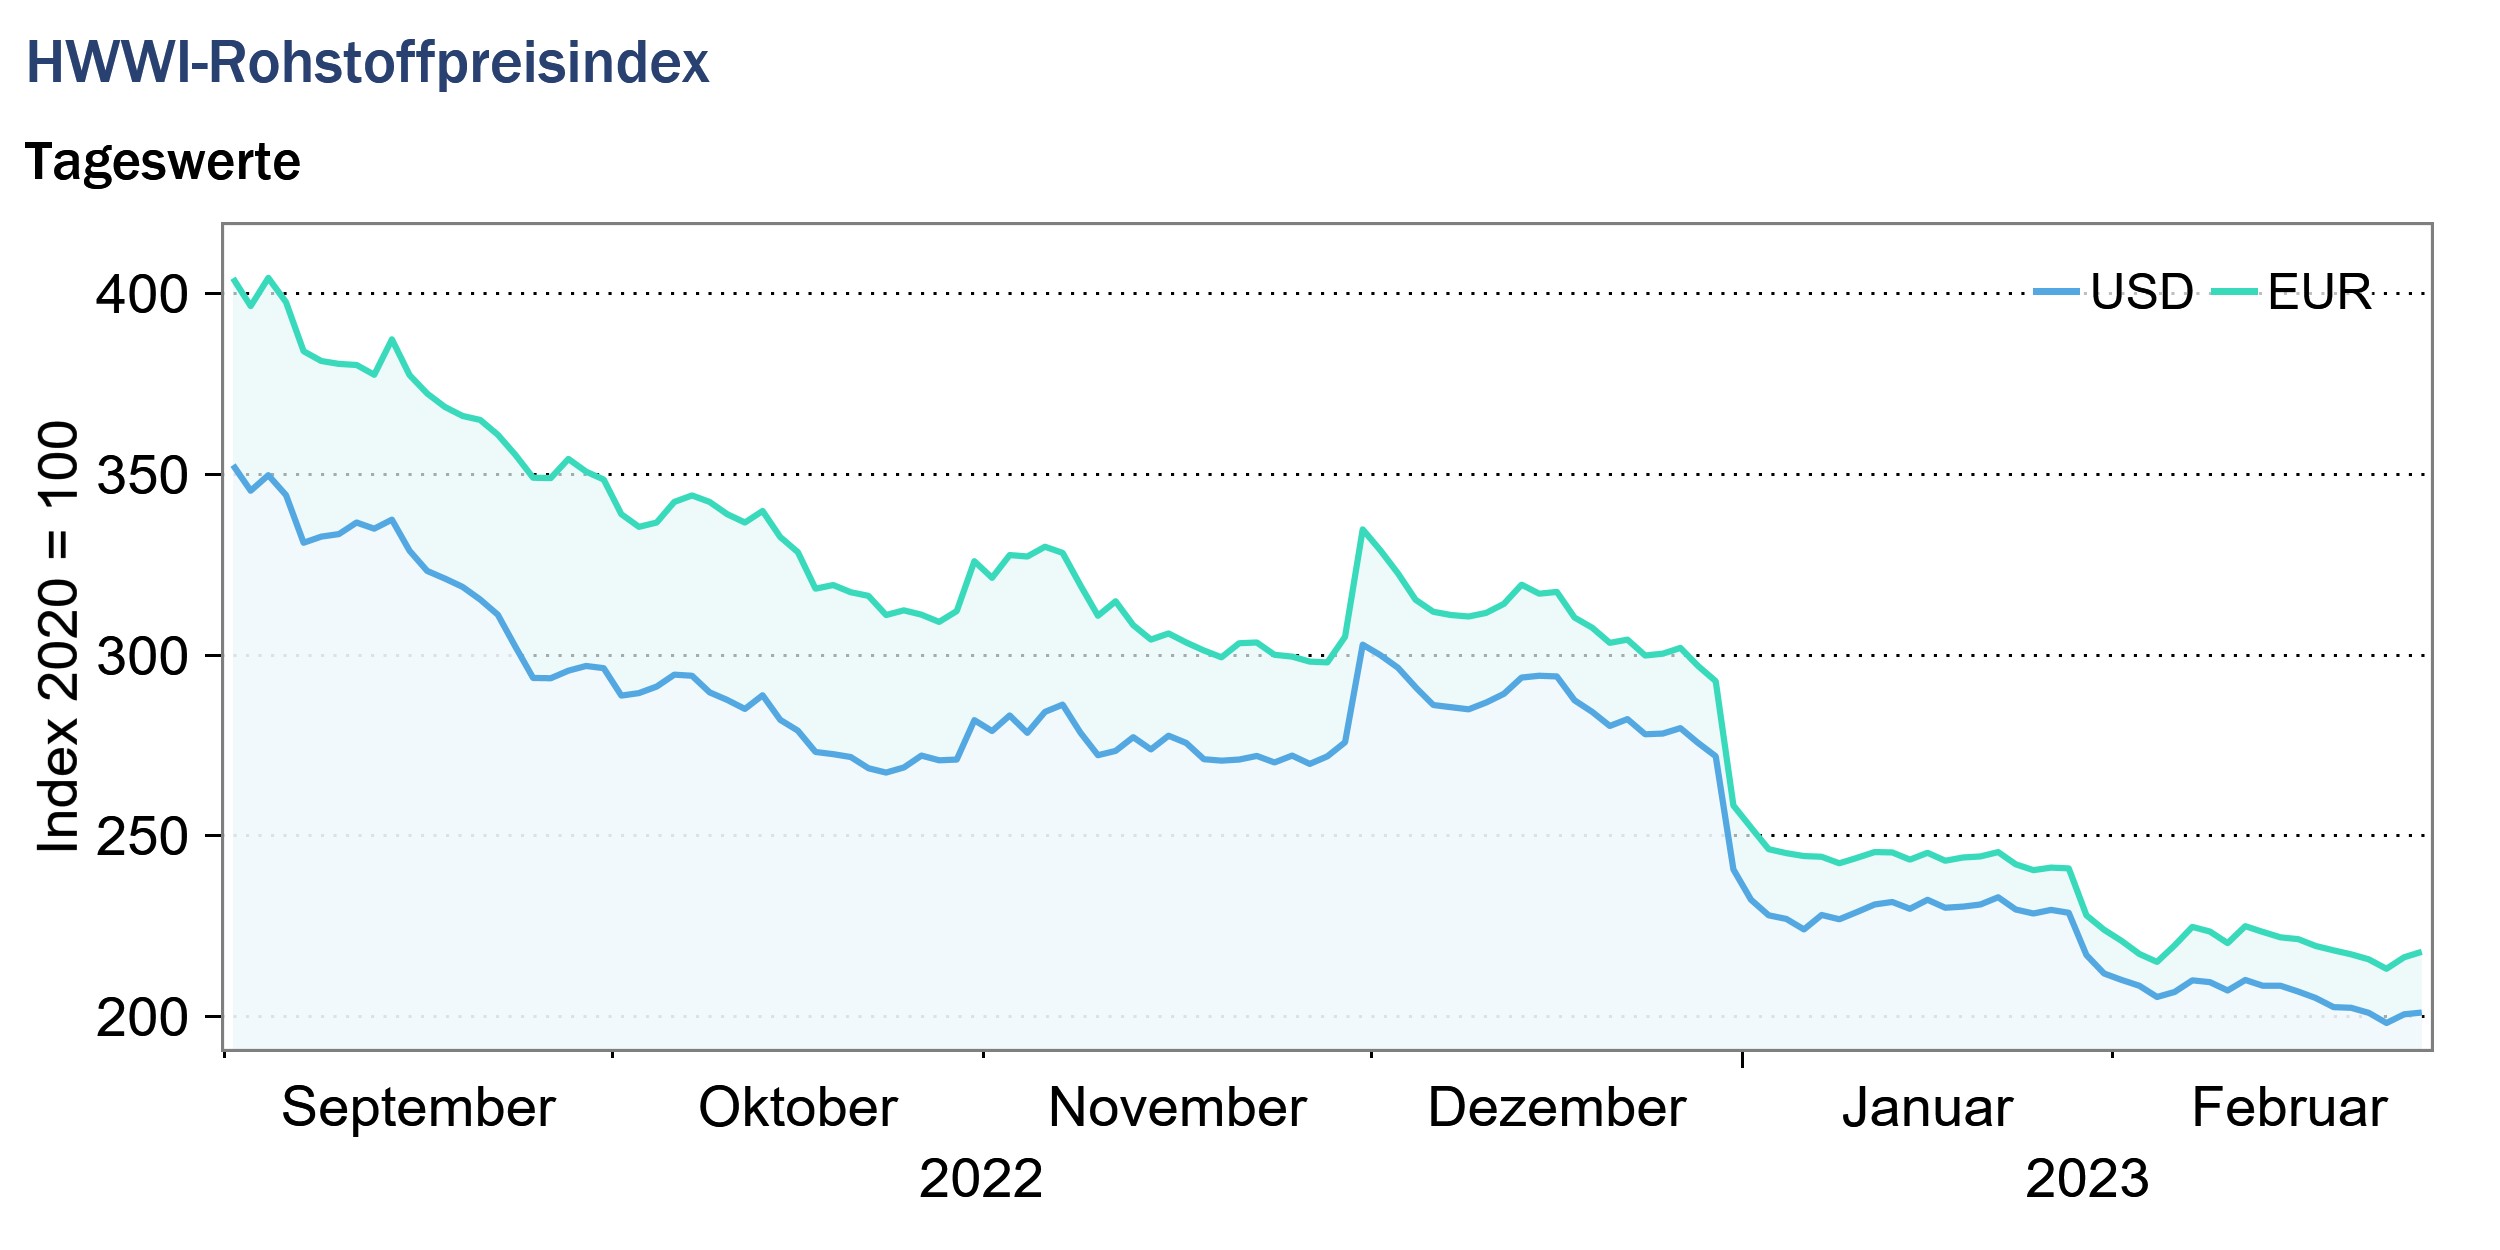 HWWI-Rohstoffpreisindex im Februar erneut zweistellig gefallen